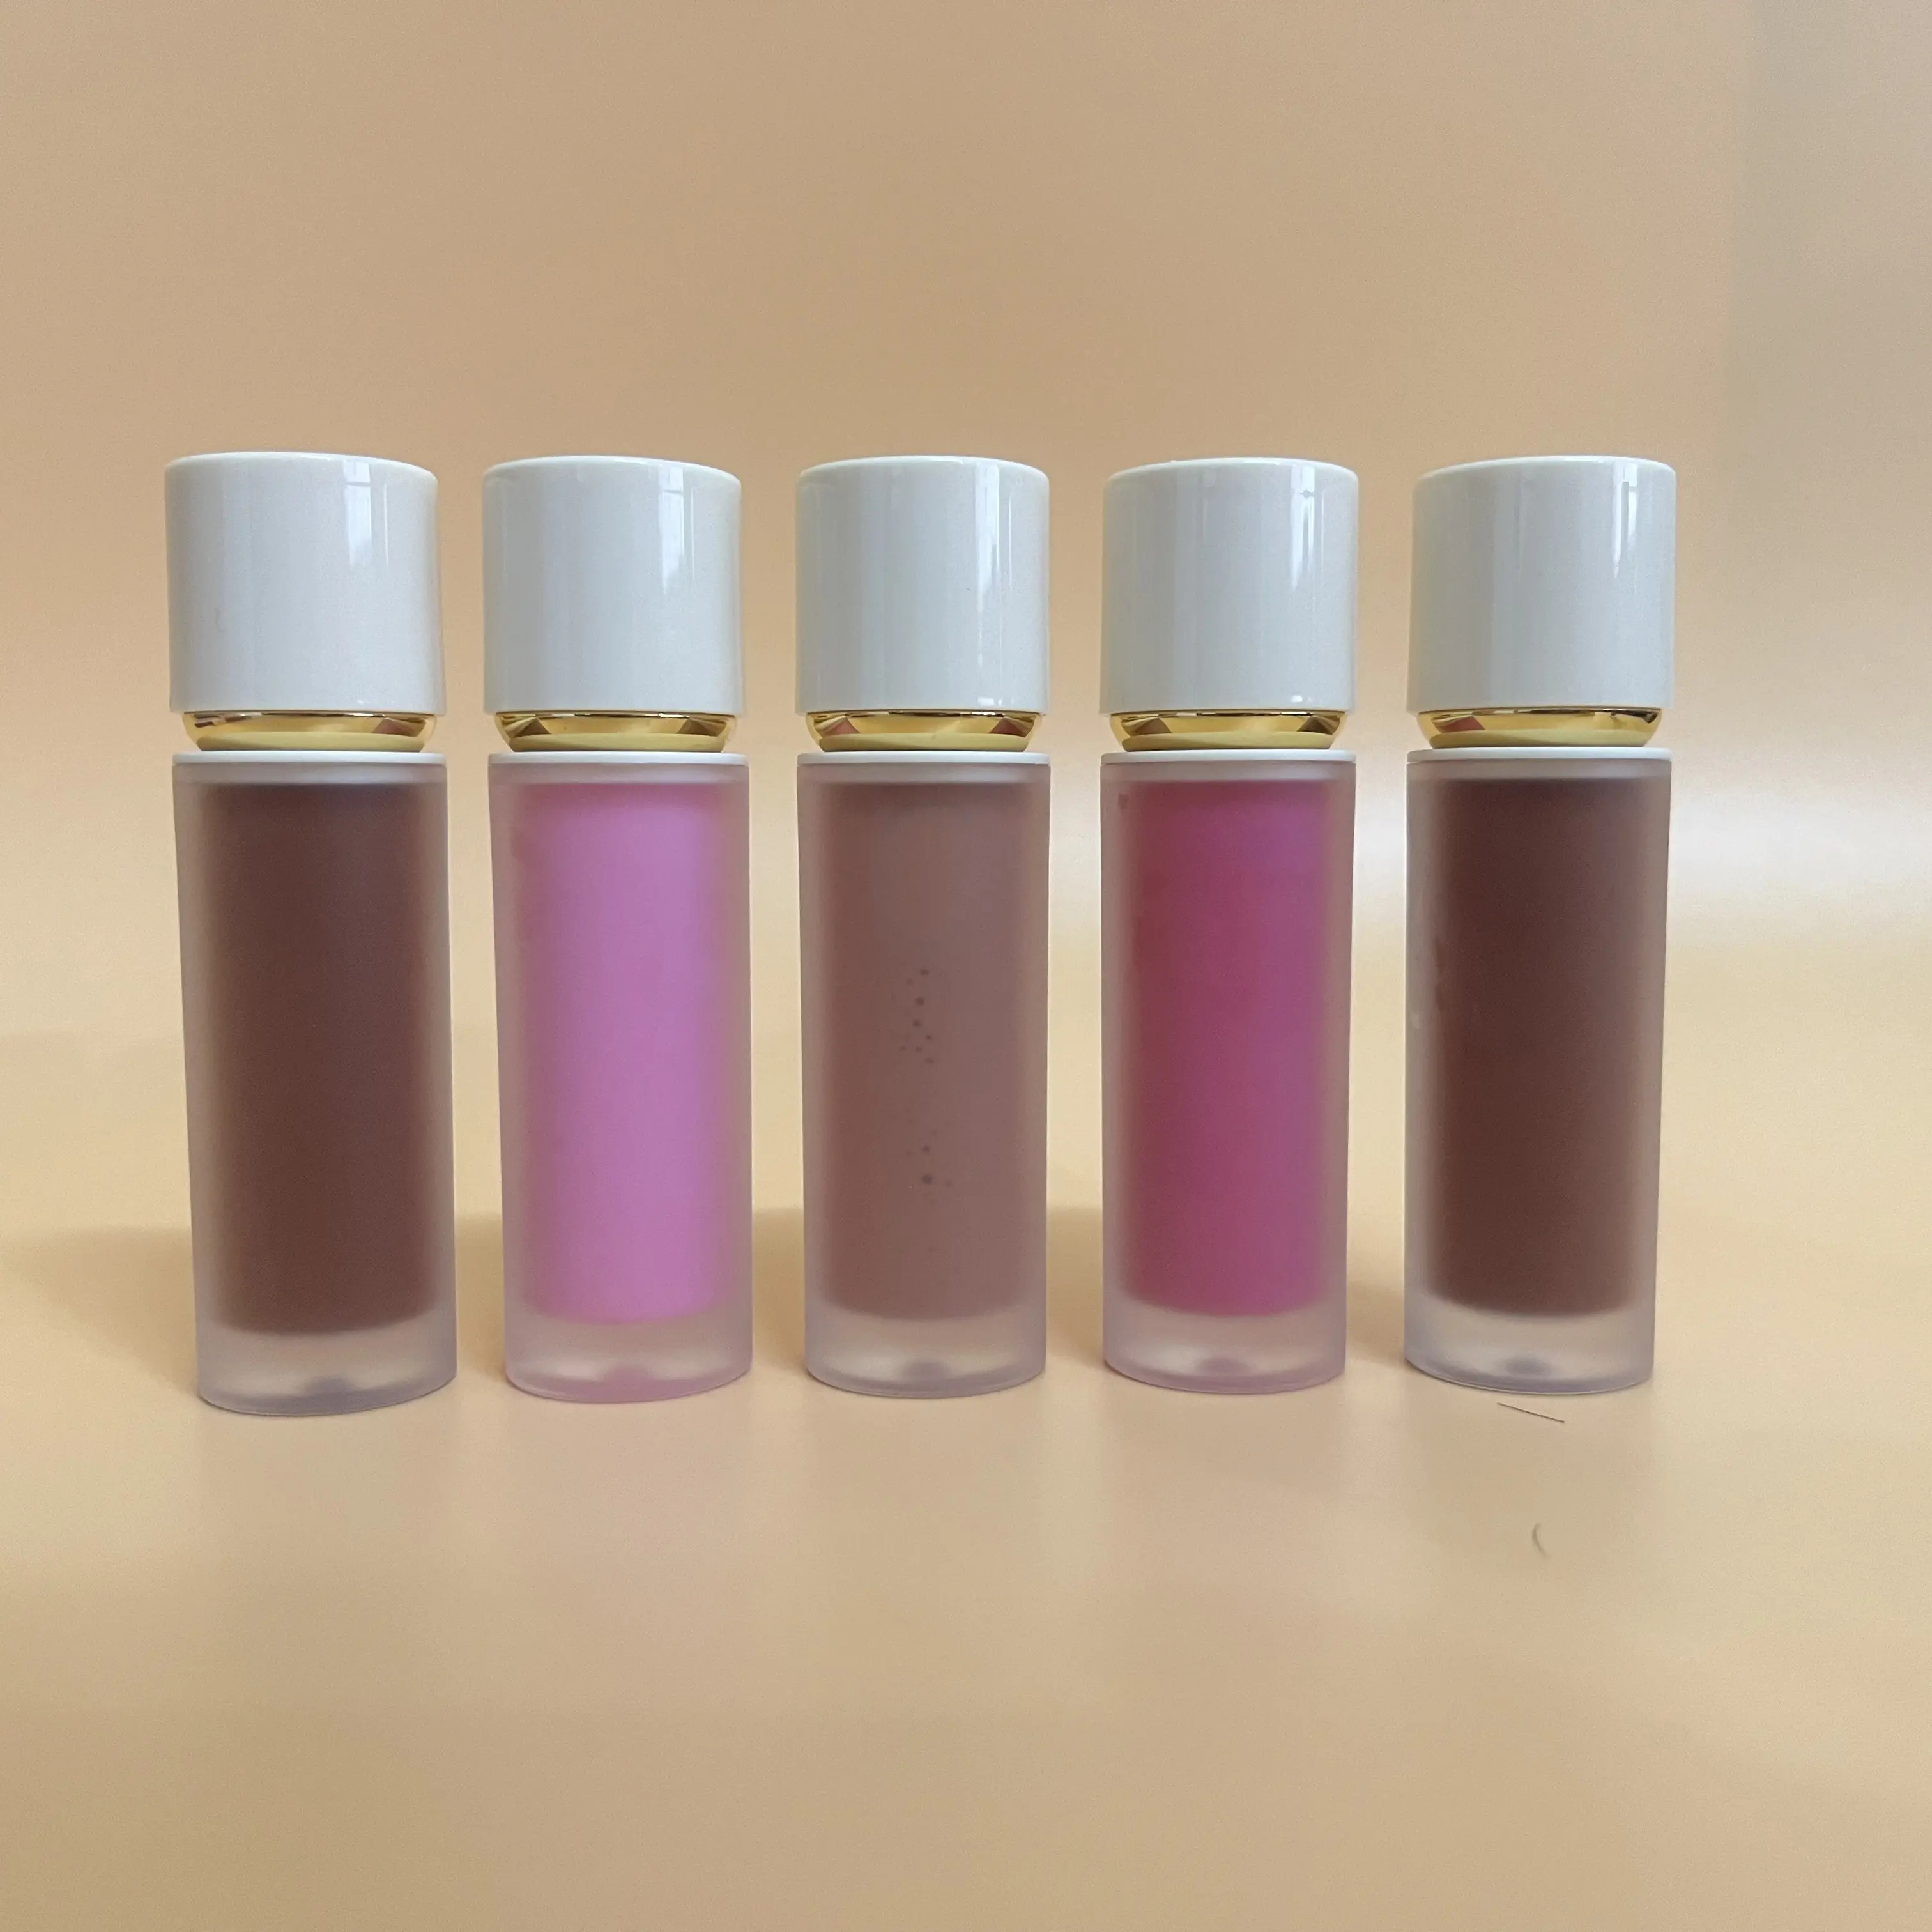 Popular bonito bege fosco tubo impermeável lustroso lip gloss batom private label